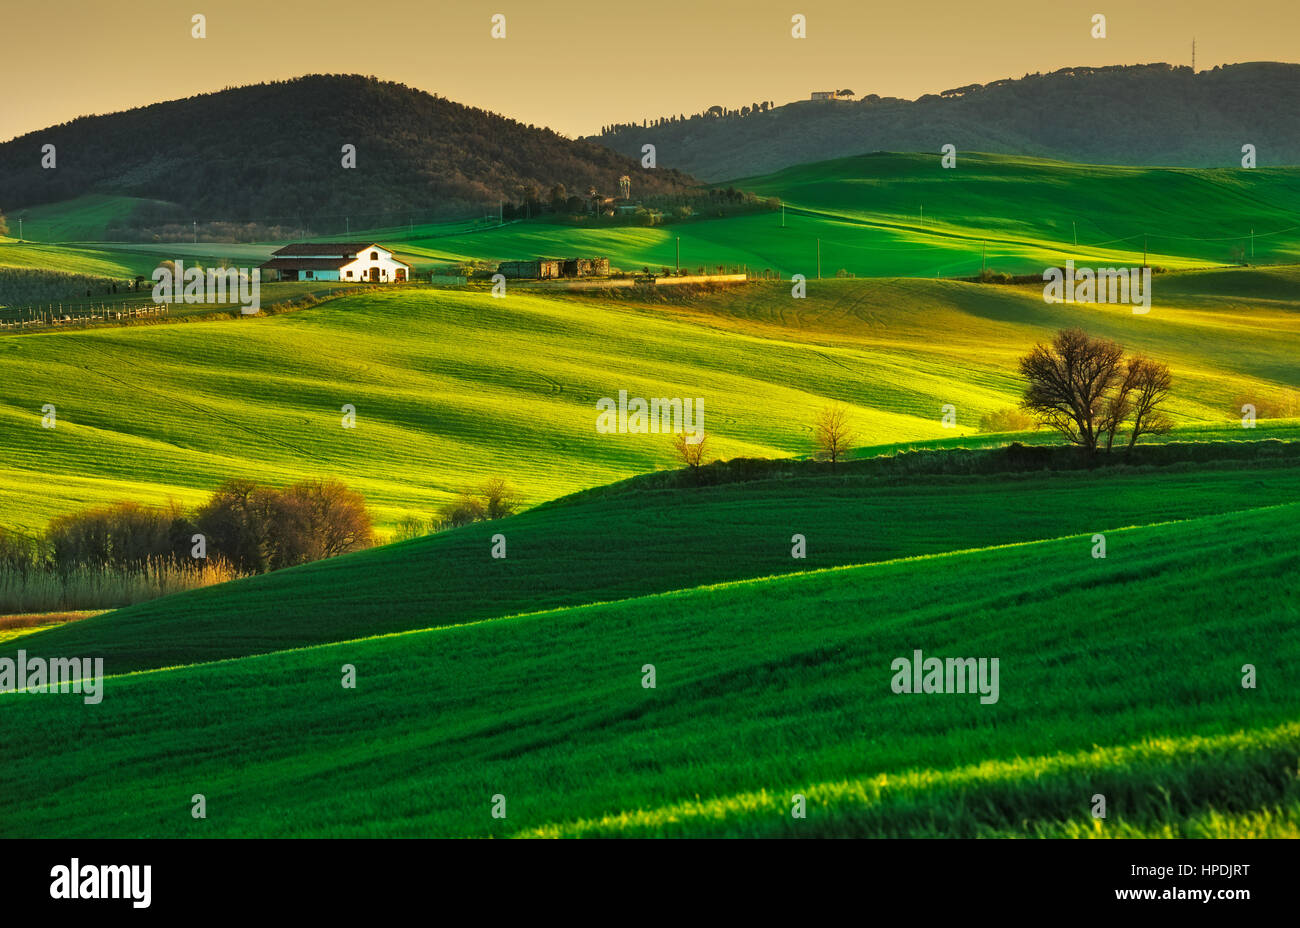 Toskana, sanfte Hügel im Sonnenuntergang. Volterra Kulturlandschaft. Grüne Wiesen, Ackerland und Bäume. Italien Stockfoto